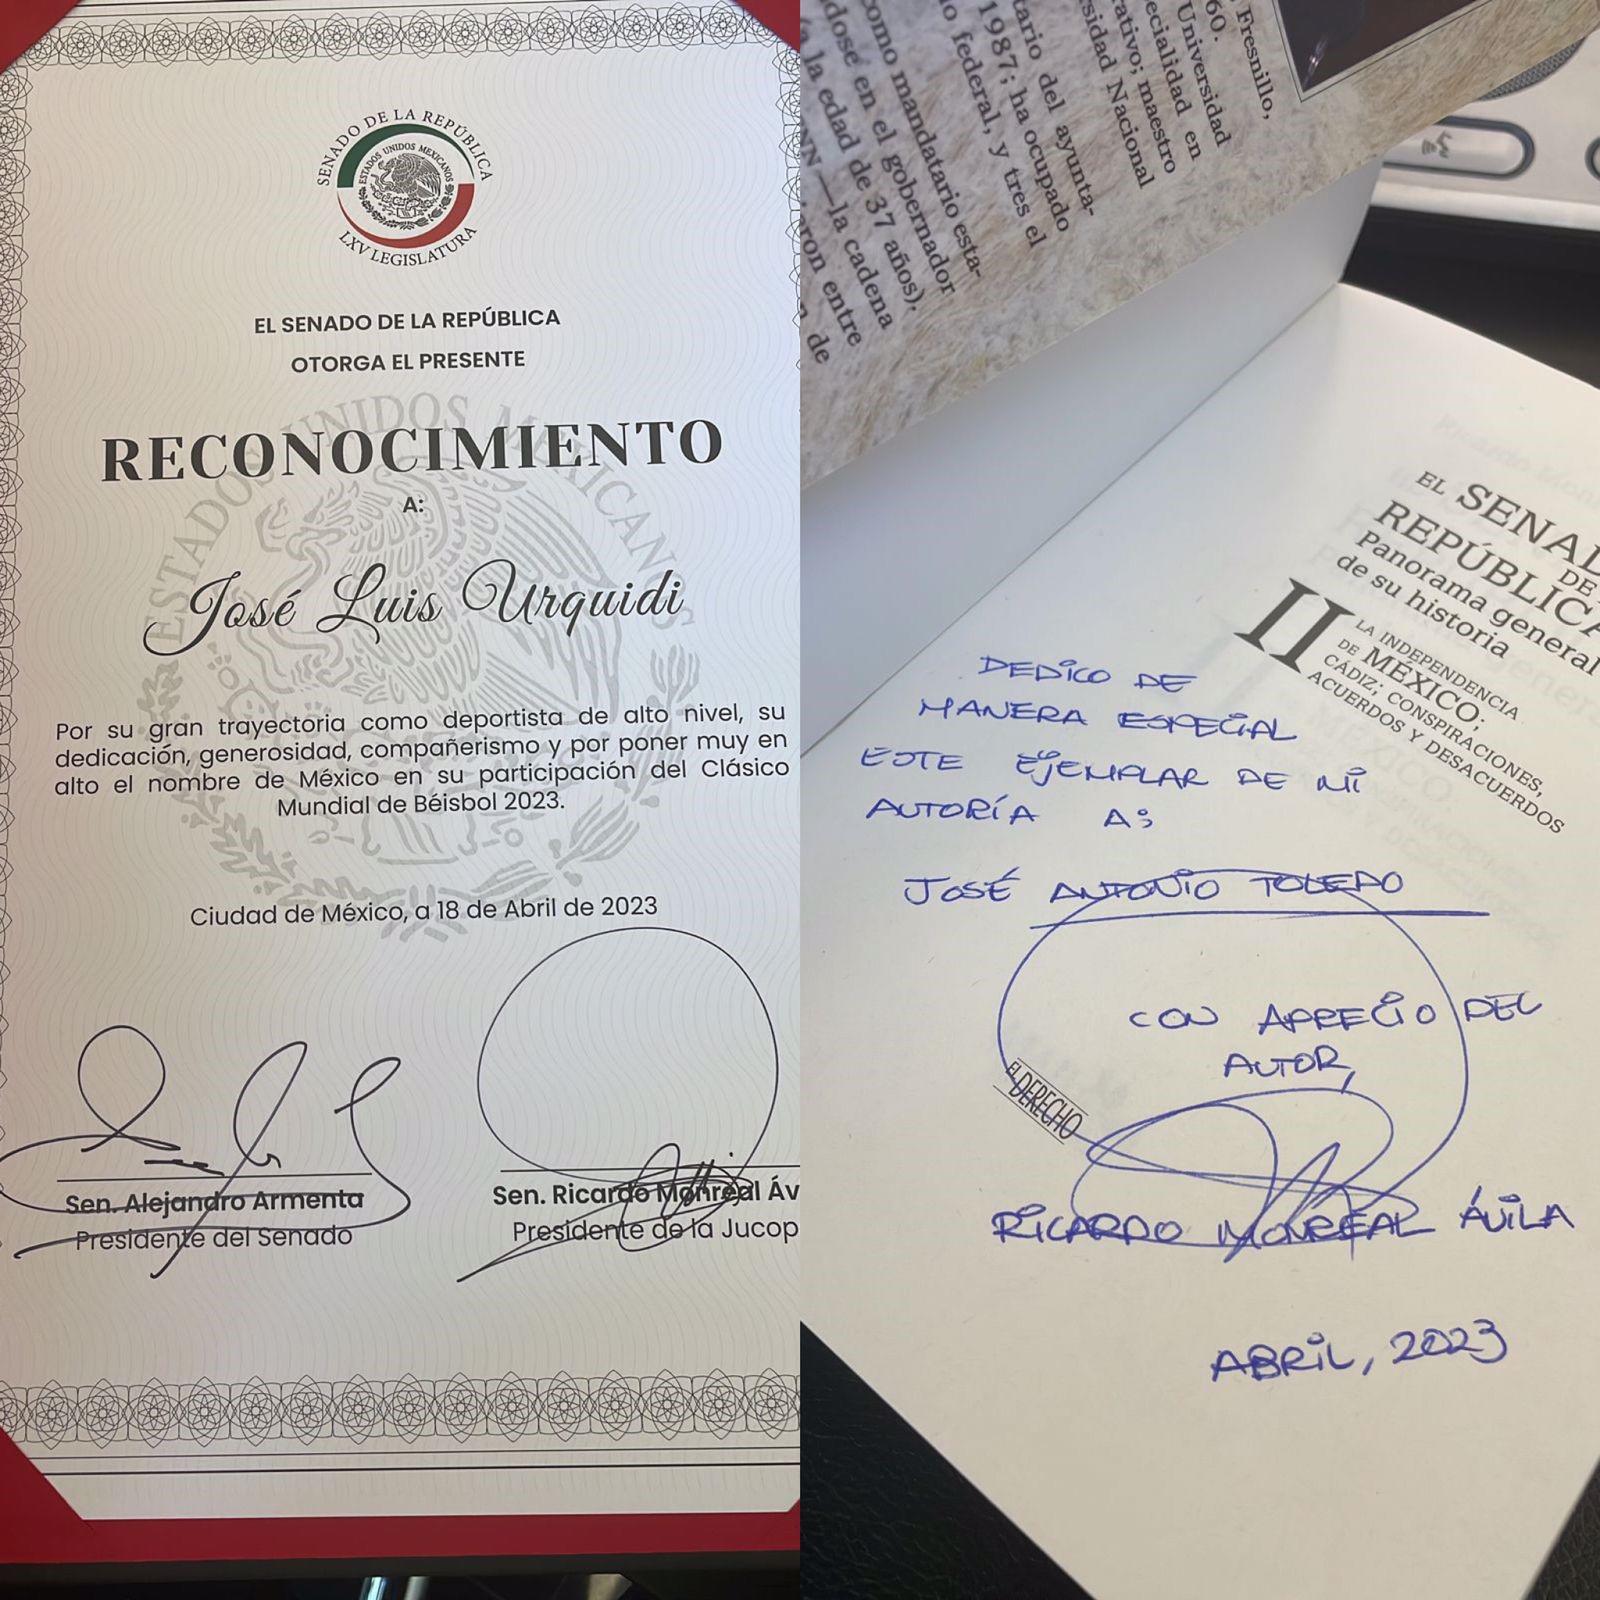 $!Venados de Mazatlán y José Luis Urquidy reciben reconocimientos en el Senado de la República